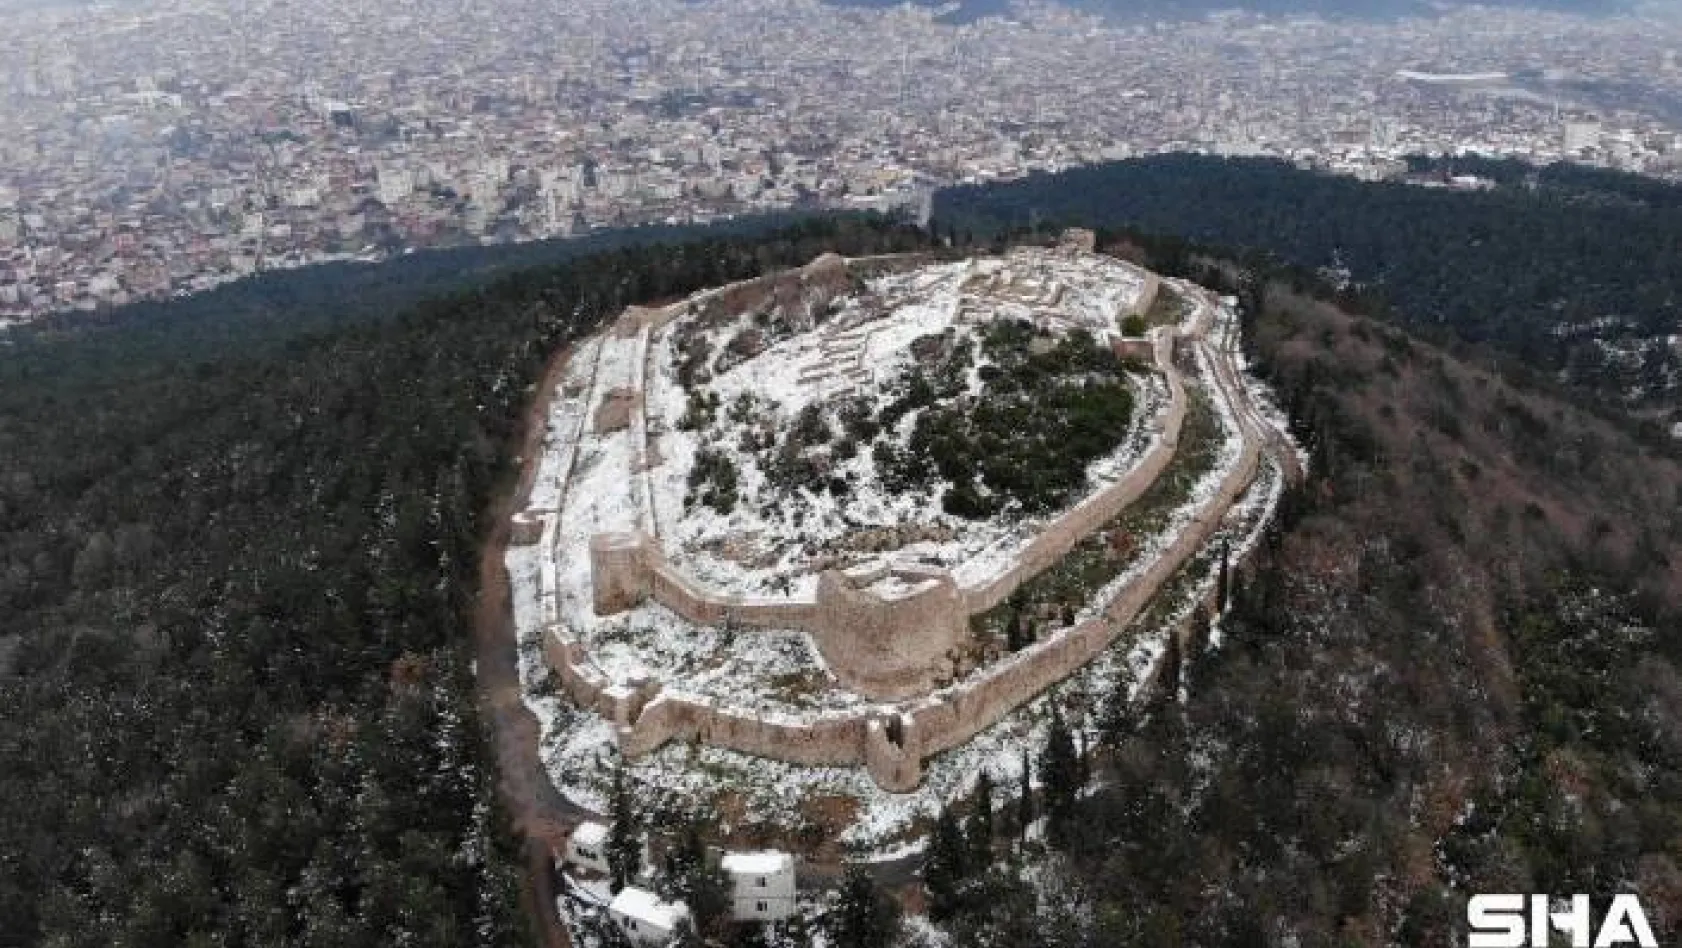 (Özel) Tarihi Aydos Kalesi'nde kar yağışı kartpostallık görüntüler oluşturdu